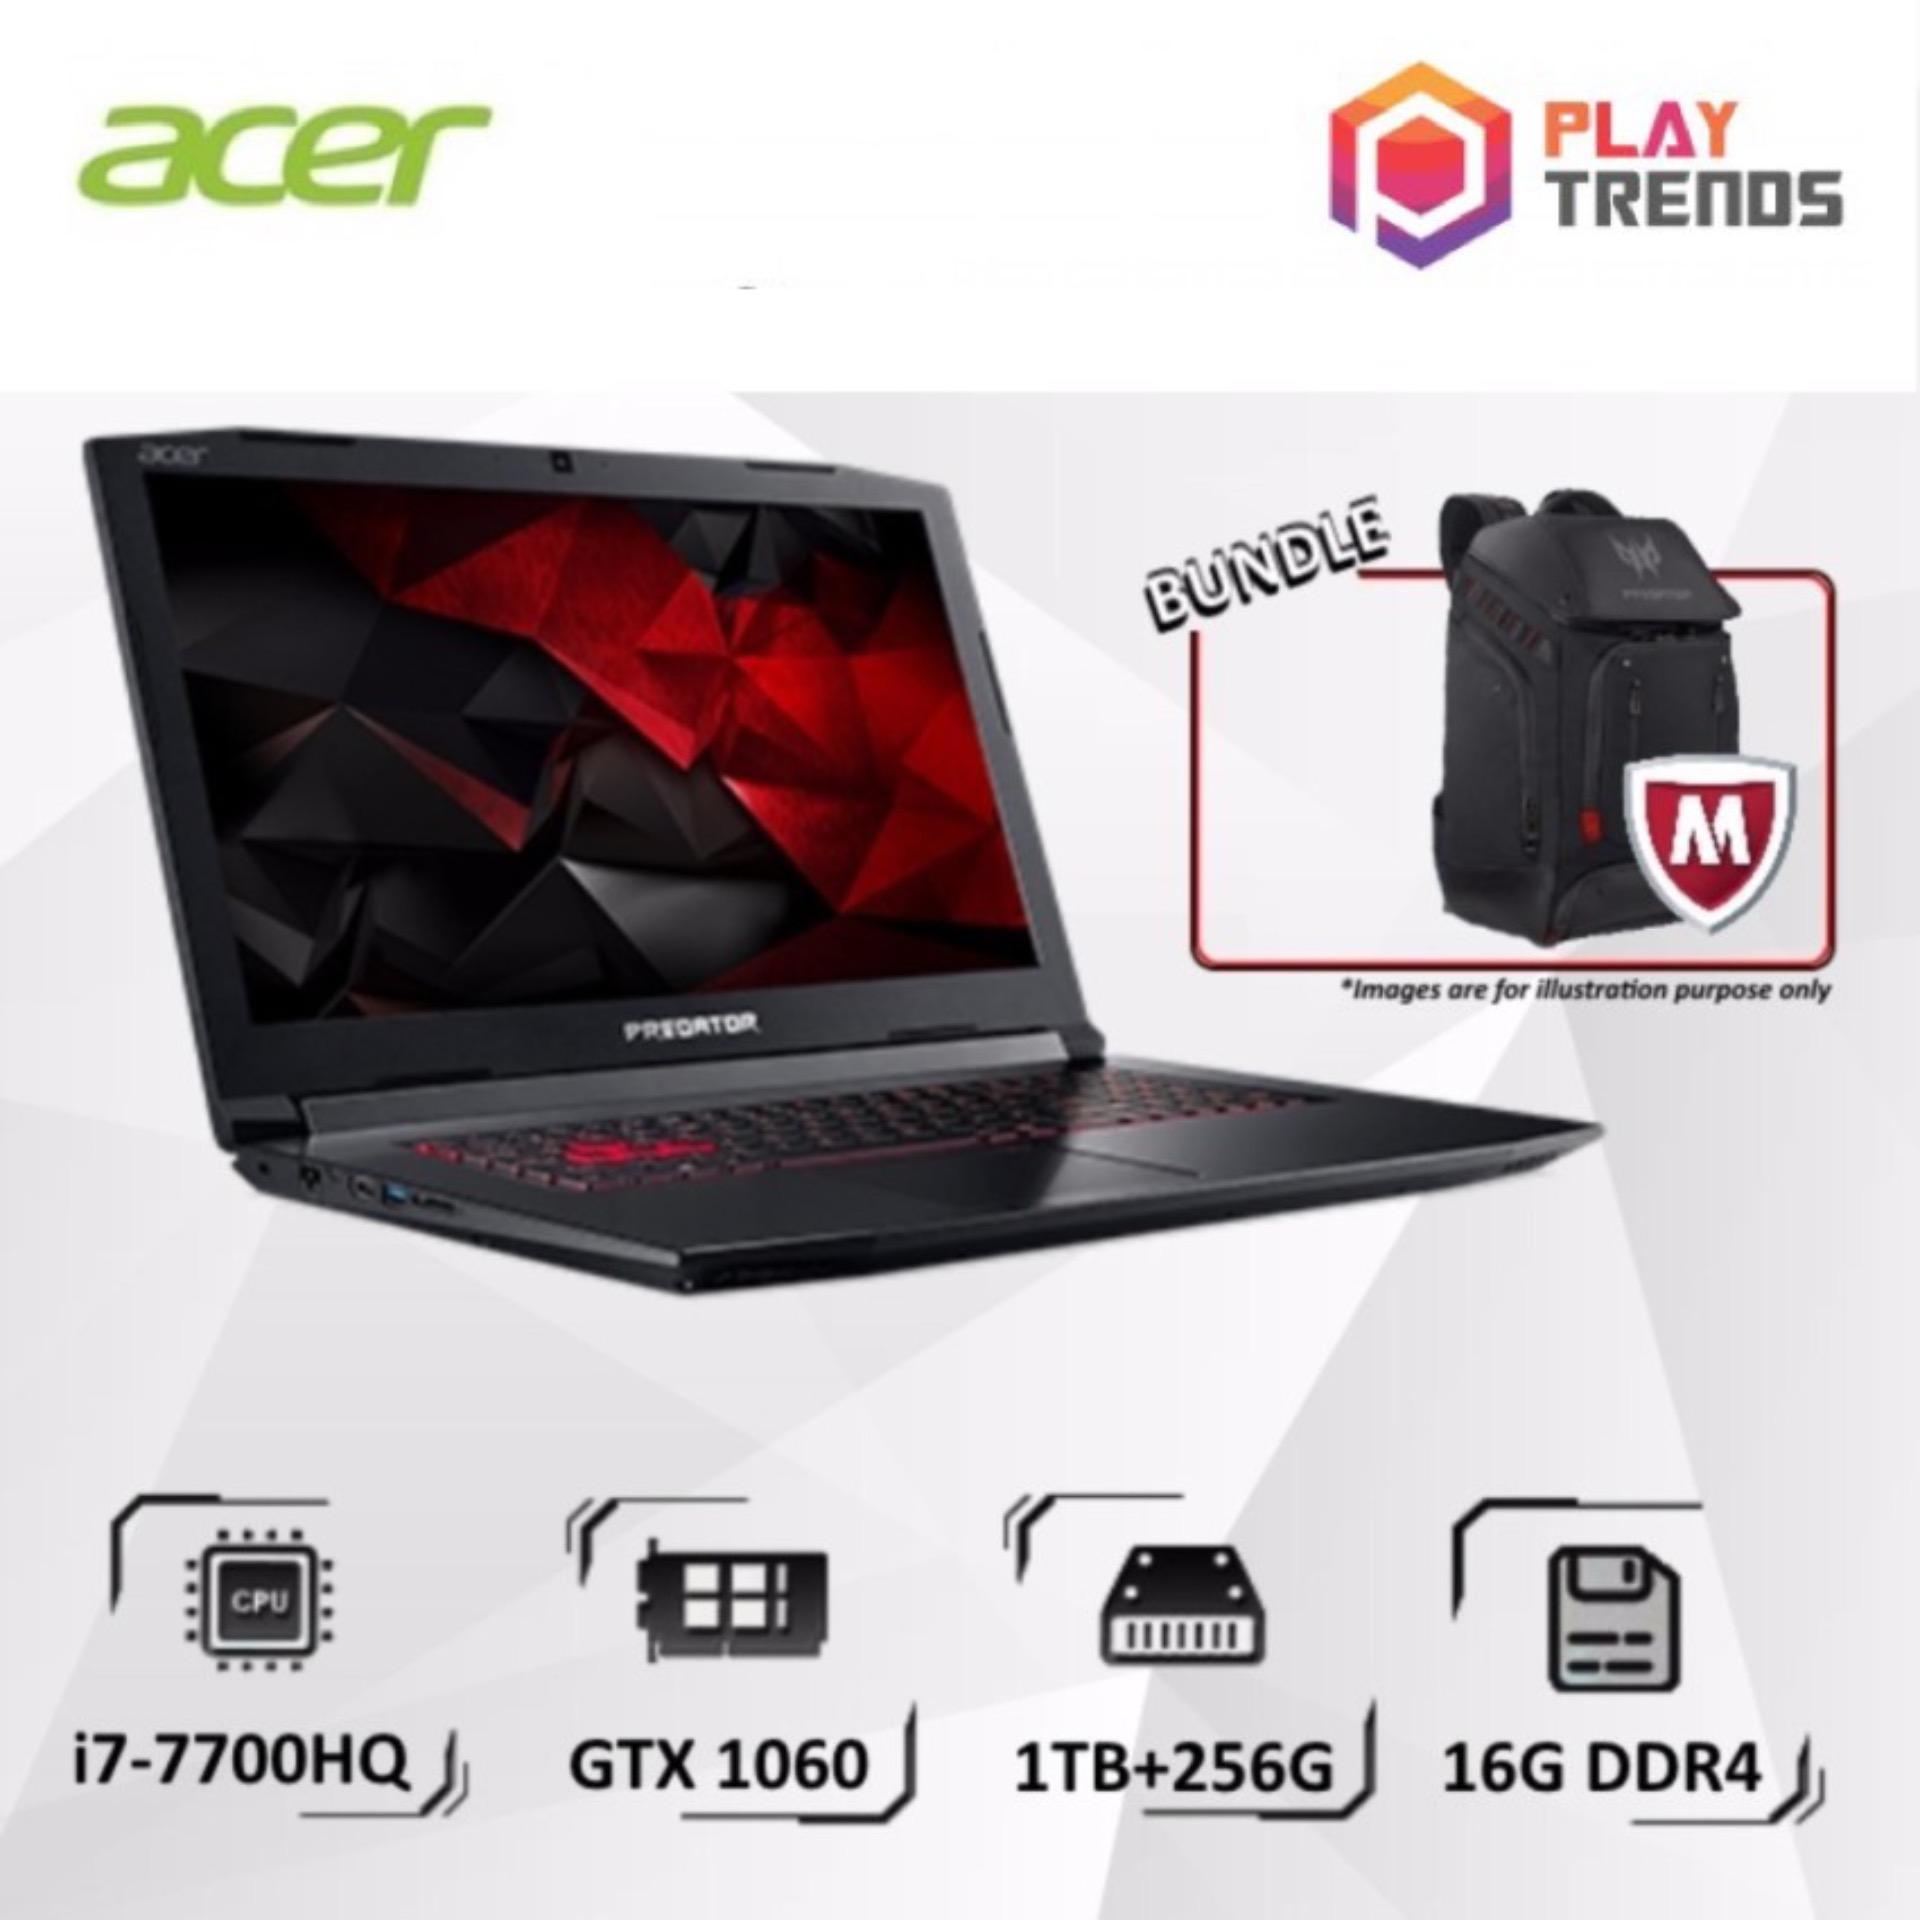 APRIL PROMO!!! Acer Predator Helios 300 (G3-572-7570) - 15.6